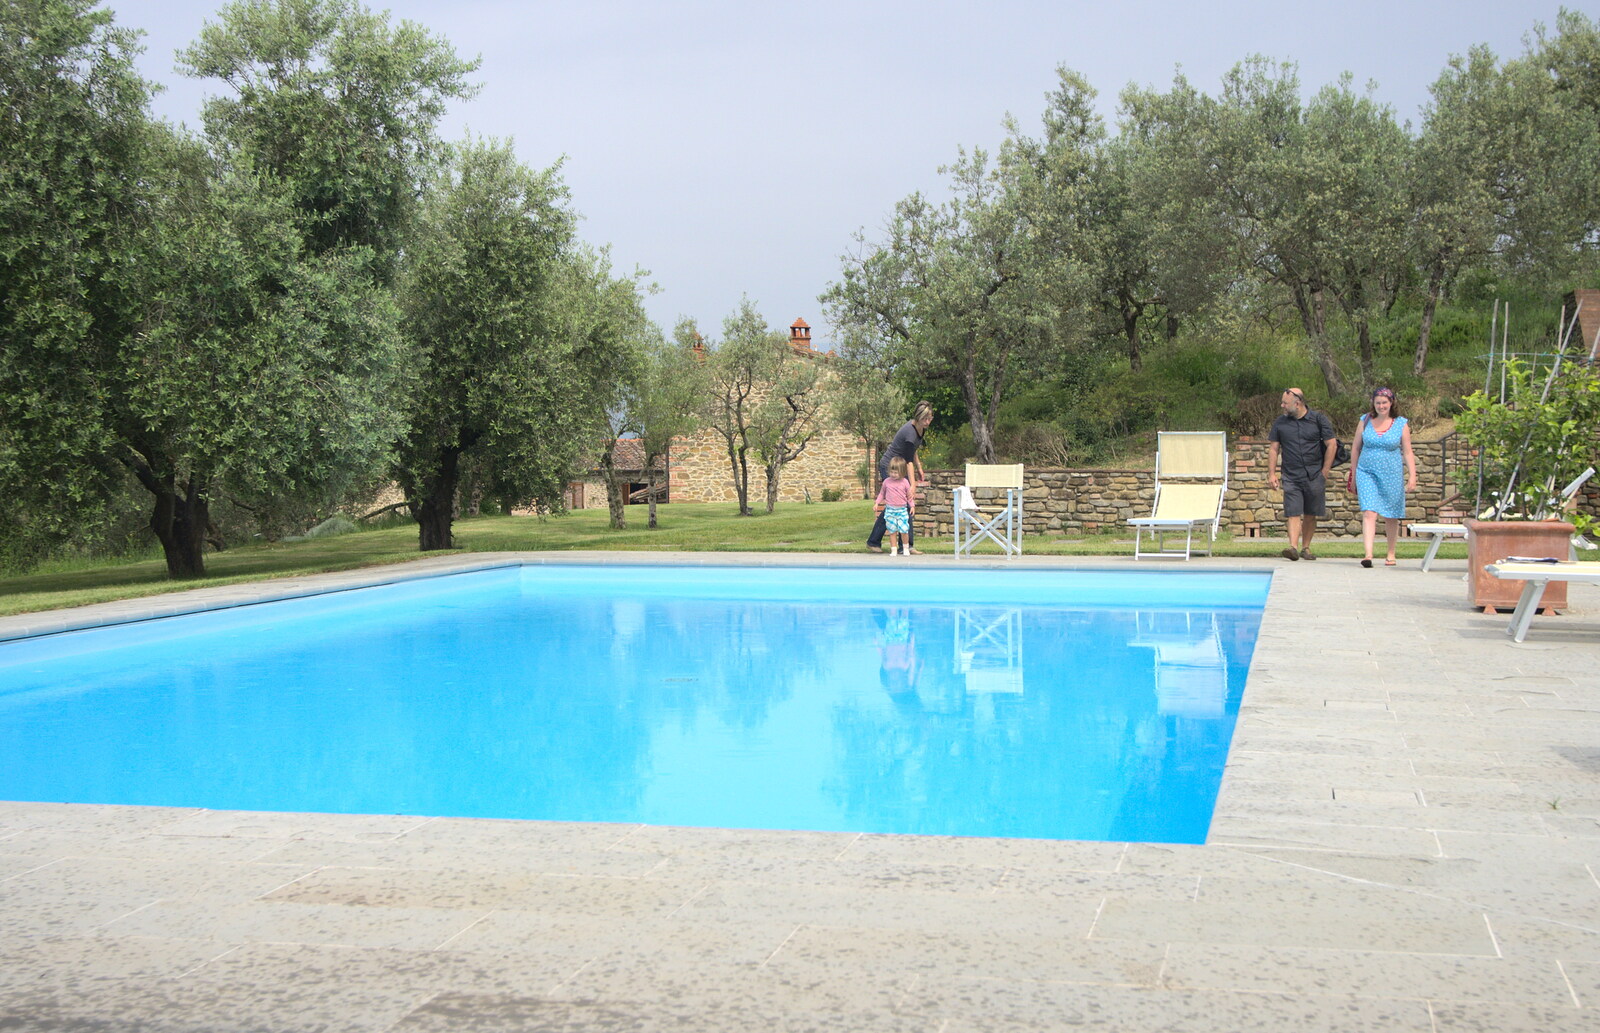 Marconi, Arezzo and the Sagra del Maccherone Festival, Battifolle, Tuscany - 9th June 2013: The swimming pool